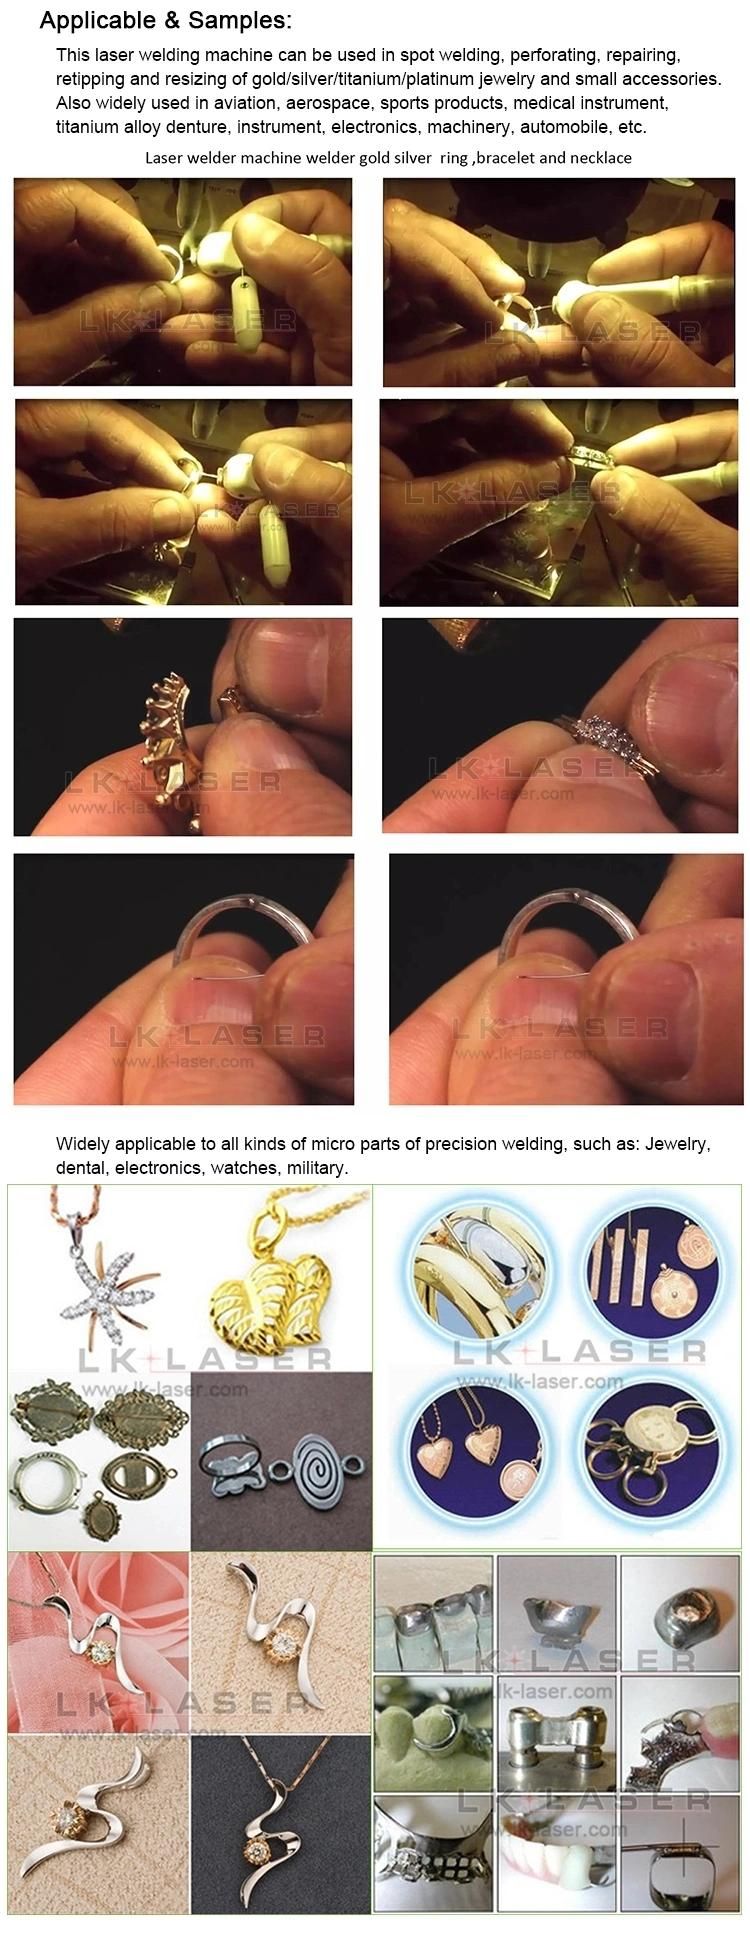 Hot Sale Gold Jewelry Laser Welding Machine YAG Handheld Laser Spot Welder